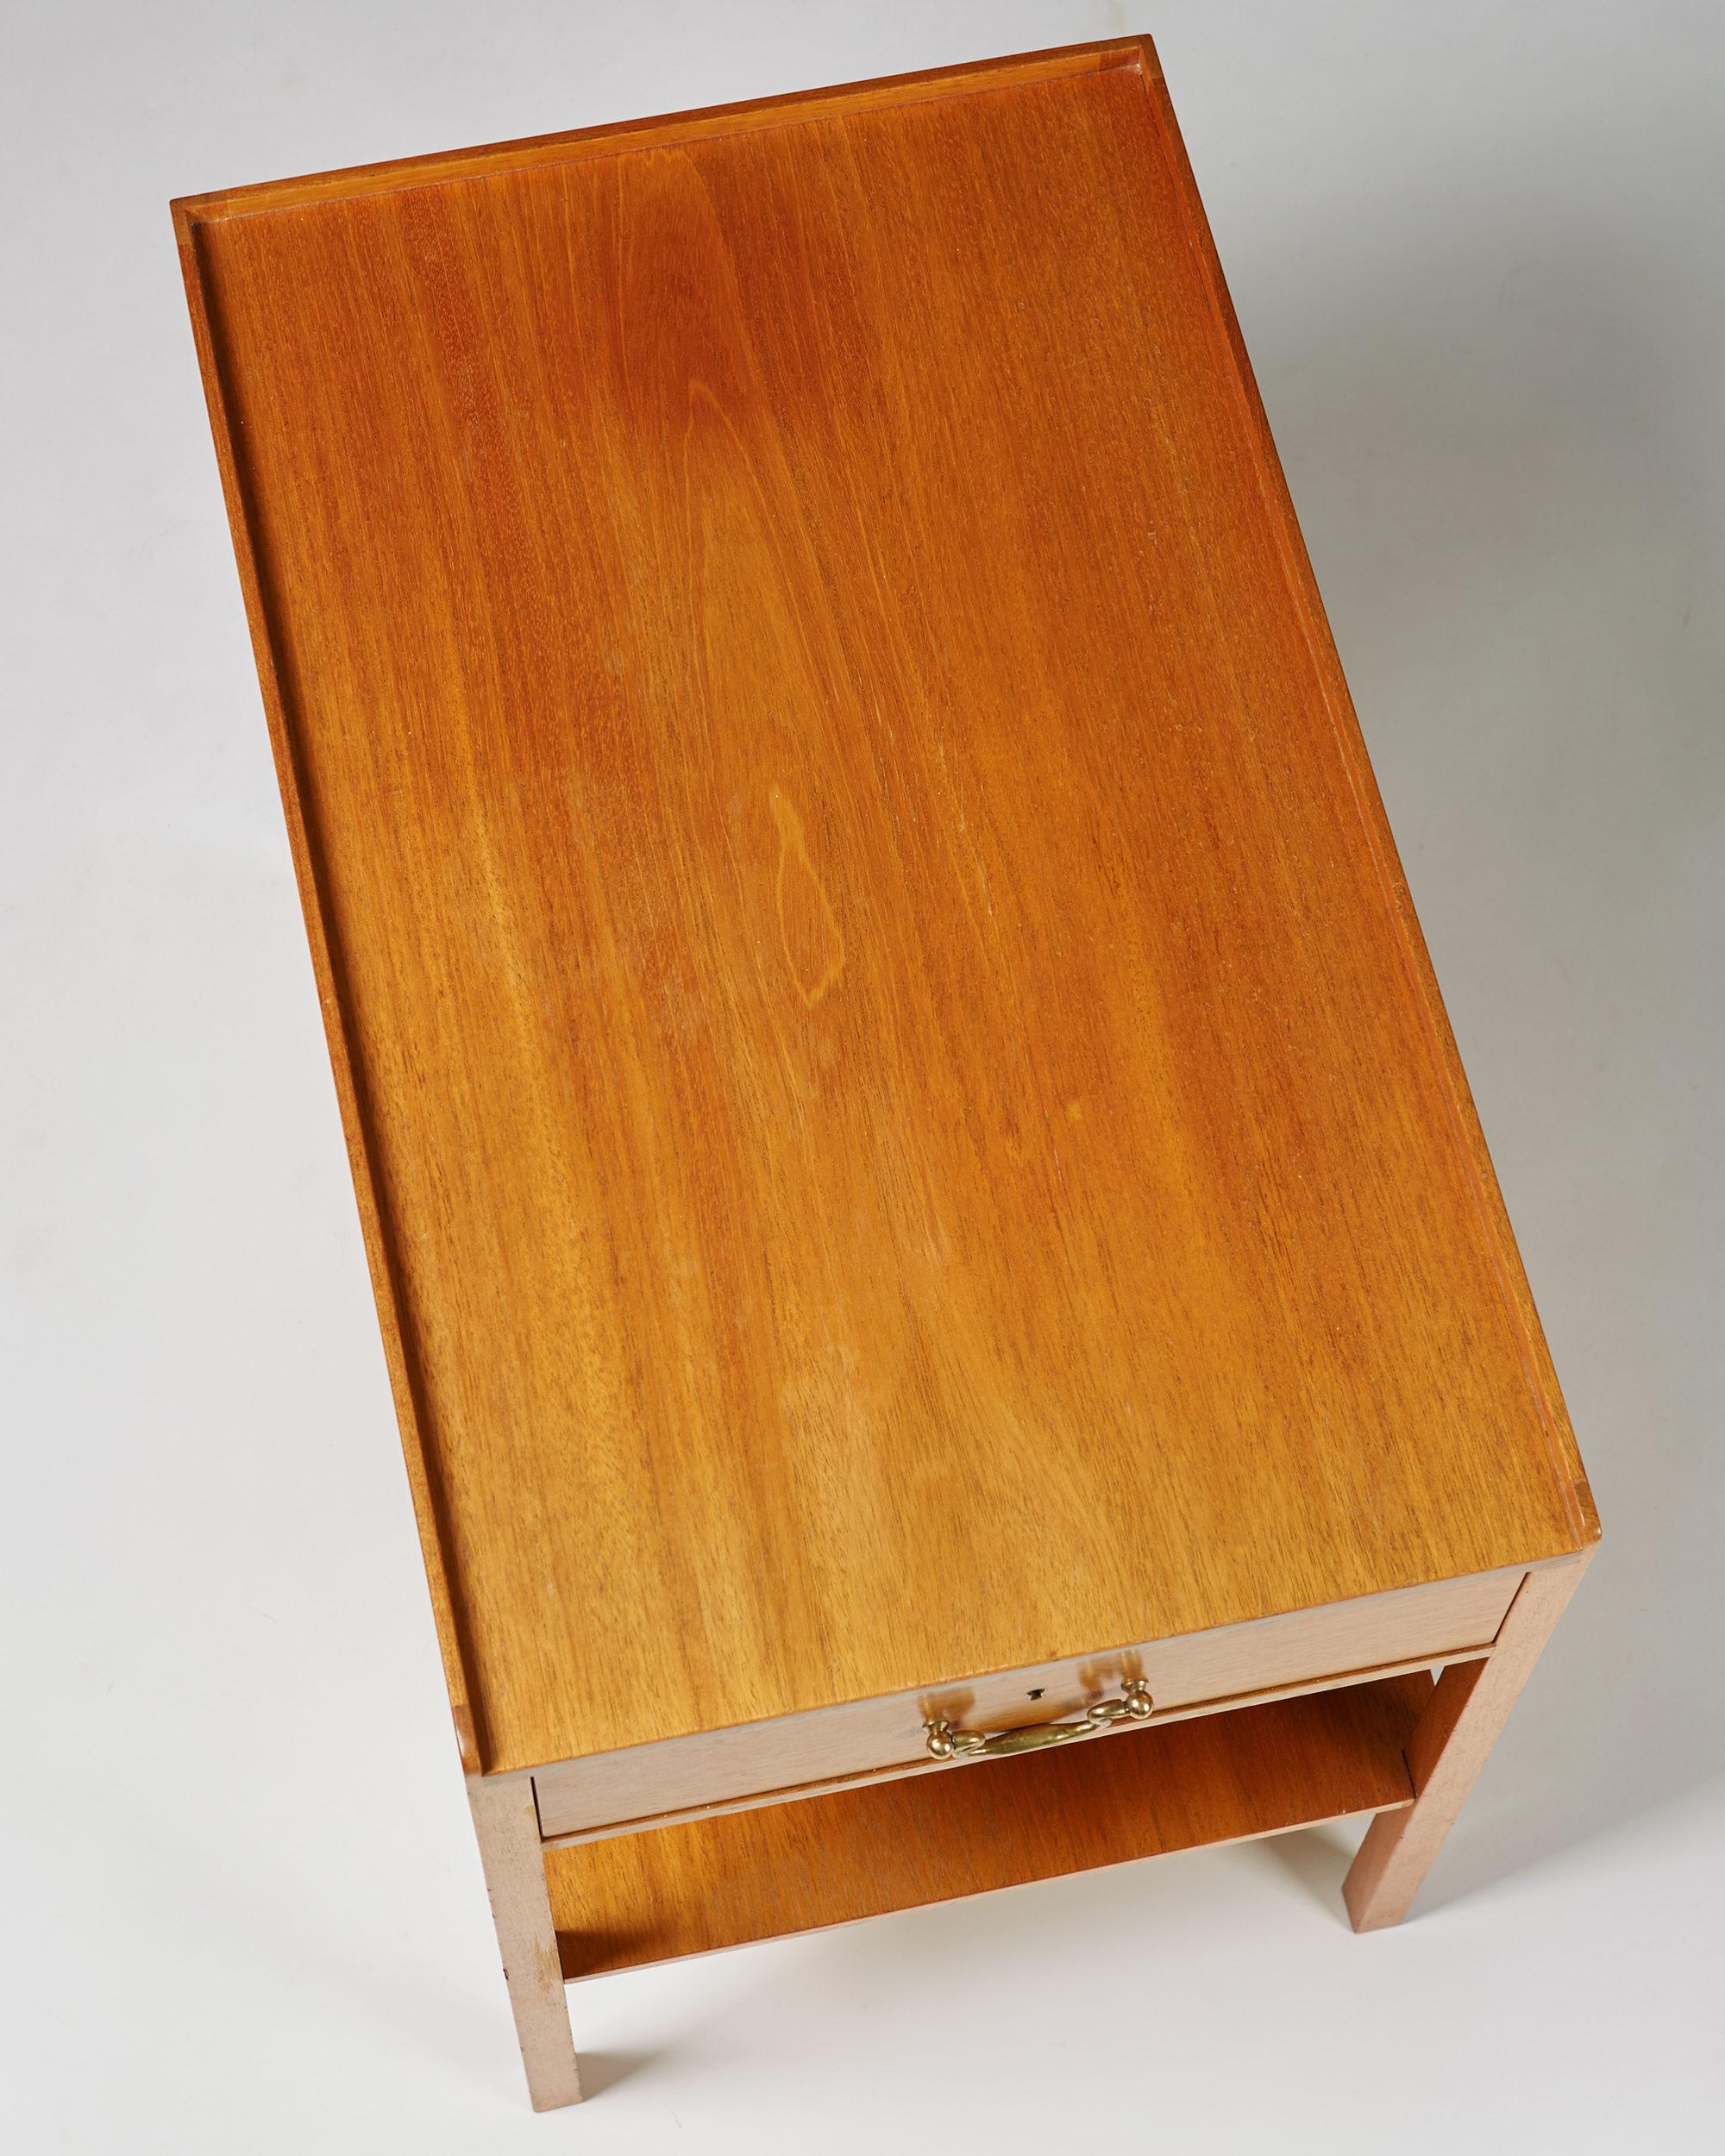 Mahogany Bedside Table Model 914 Designed by Josef Frank for Svenskt Tenn, Sweden, 1950s